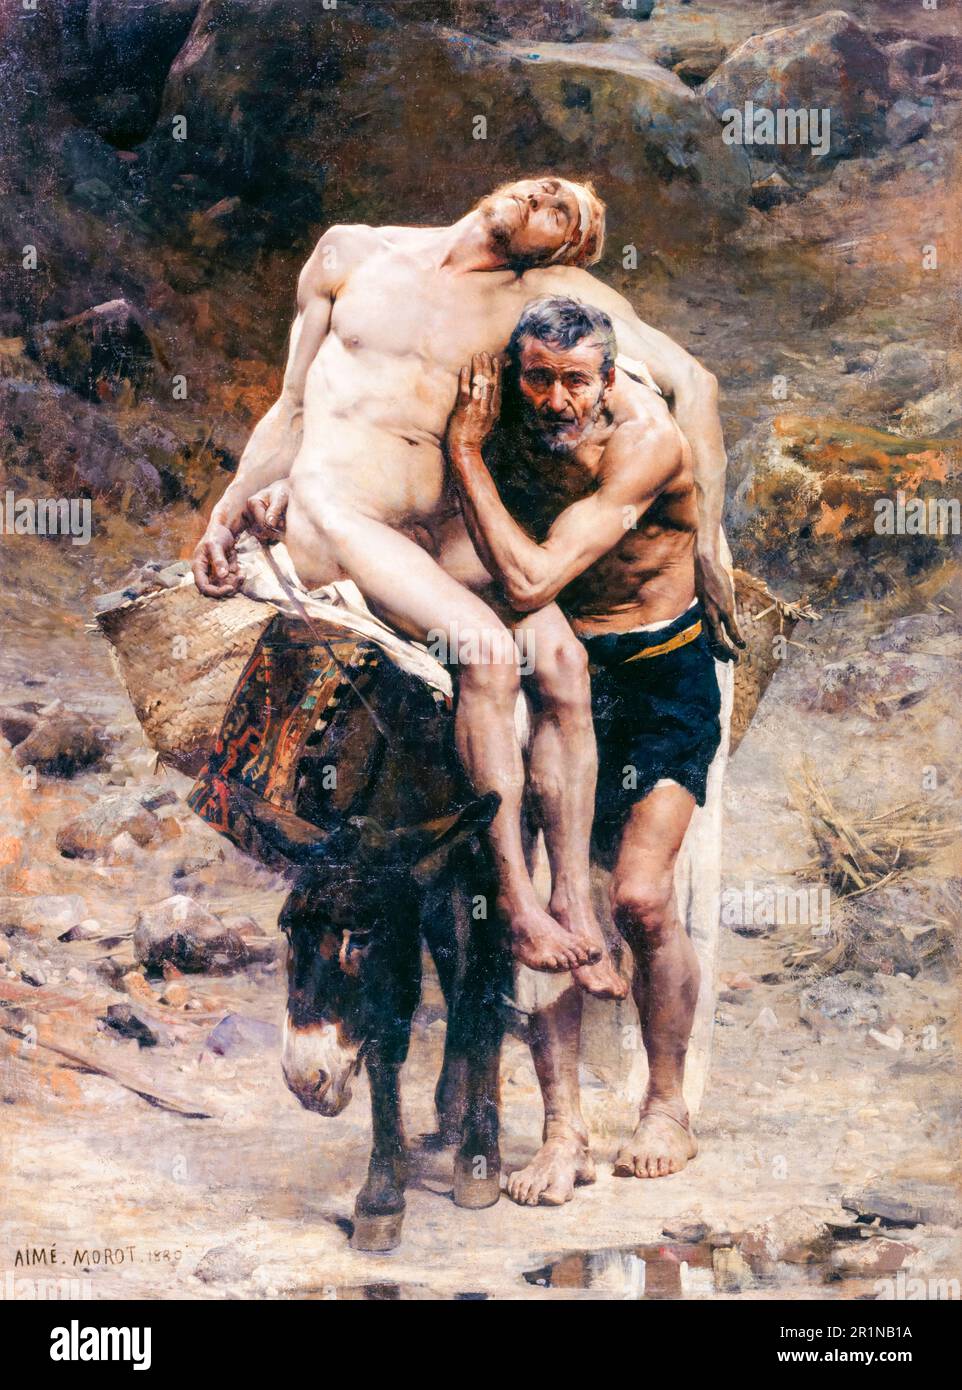 Aime Morot, peinture, le bon Samaritain, 1880 Banque D'Images